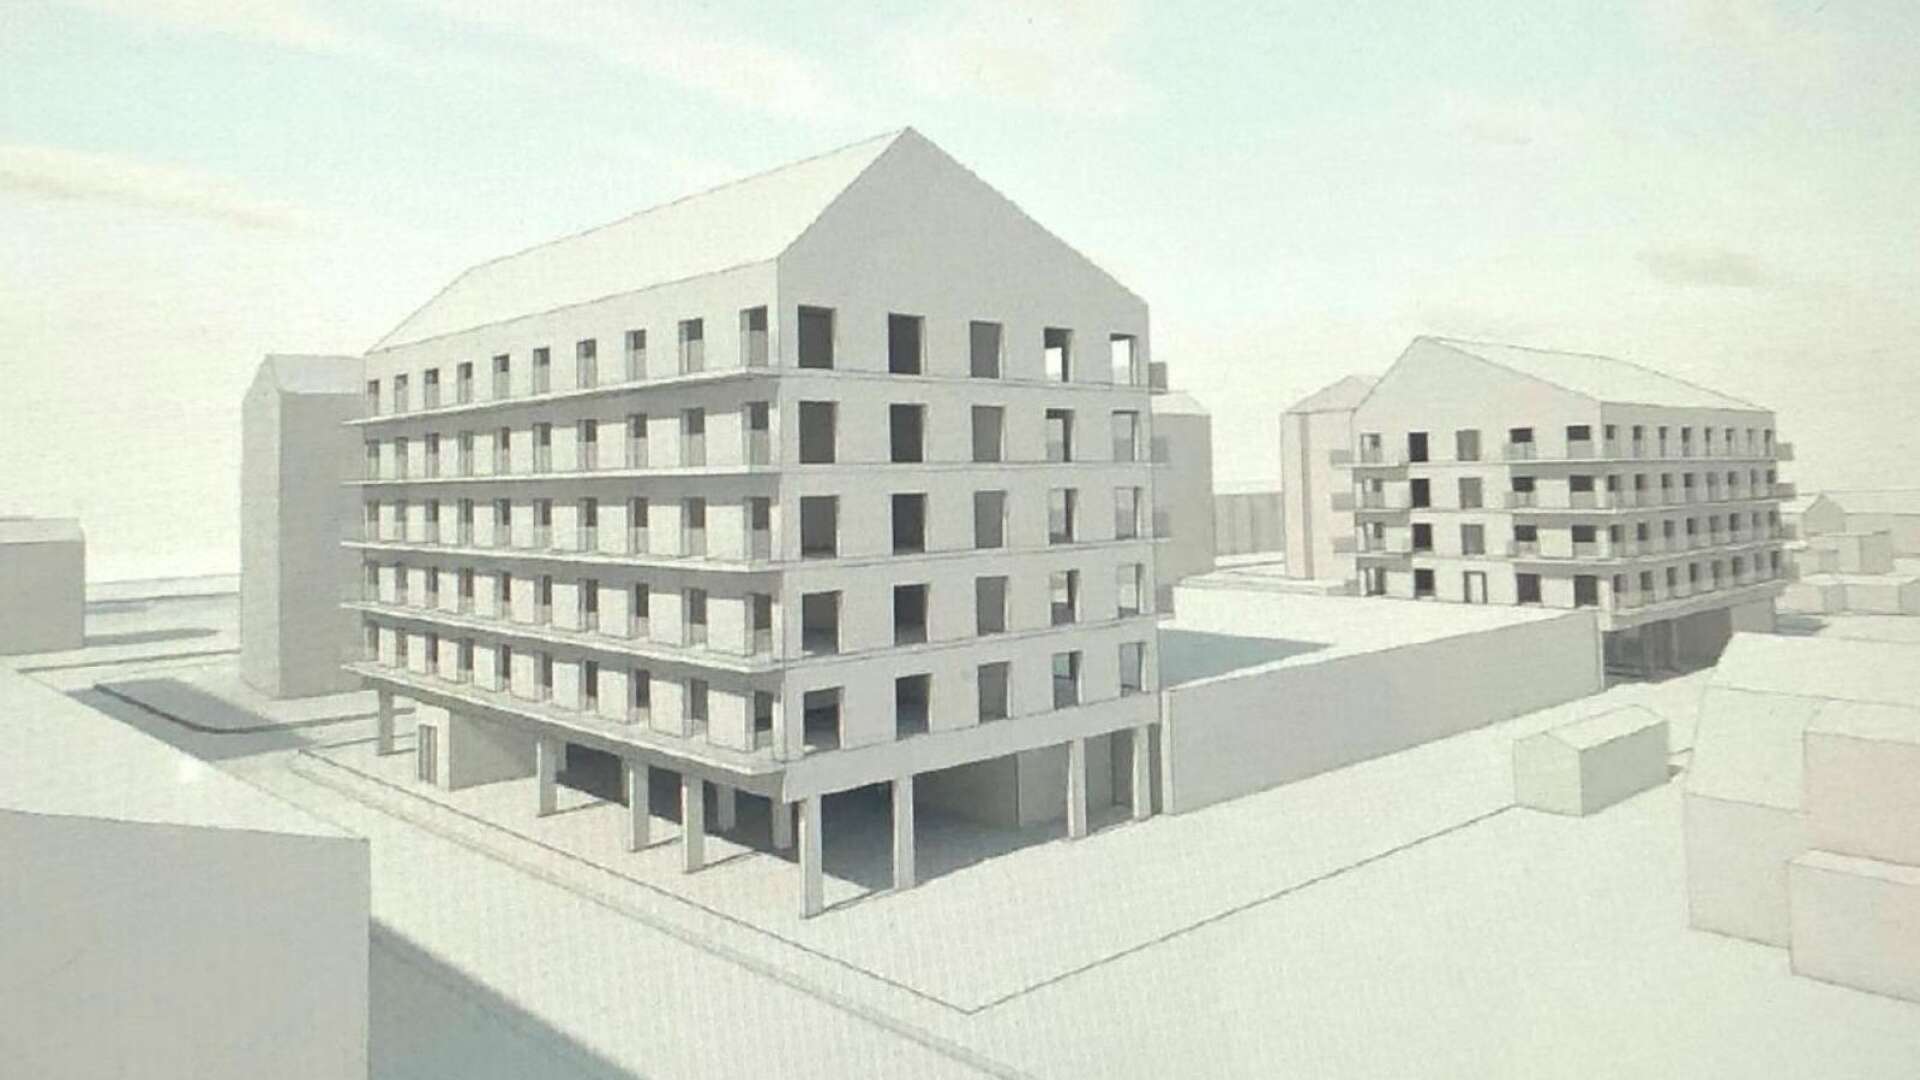 Randviken fastigheter ville bygga 96 nya lägenheter i två hus på var sin sida av Coop på Norrstrand, men stadsbyggnadsnämnden har sagt nej till förslaget.